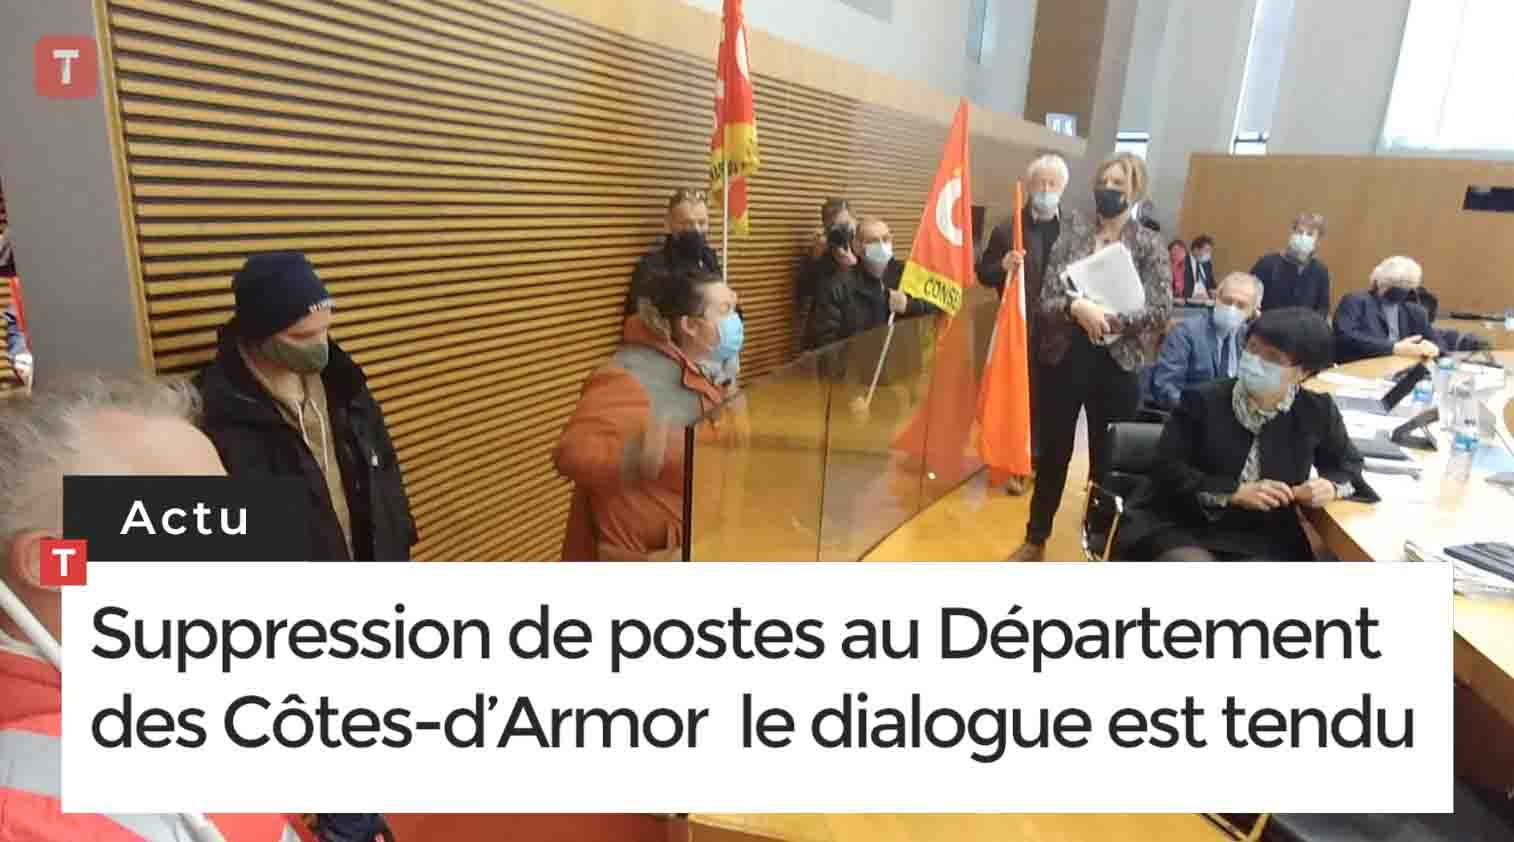 Suppression de postes au Département des Côtes-d’Armor : le dialogue est tendu (Le Télégramme)